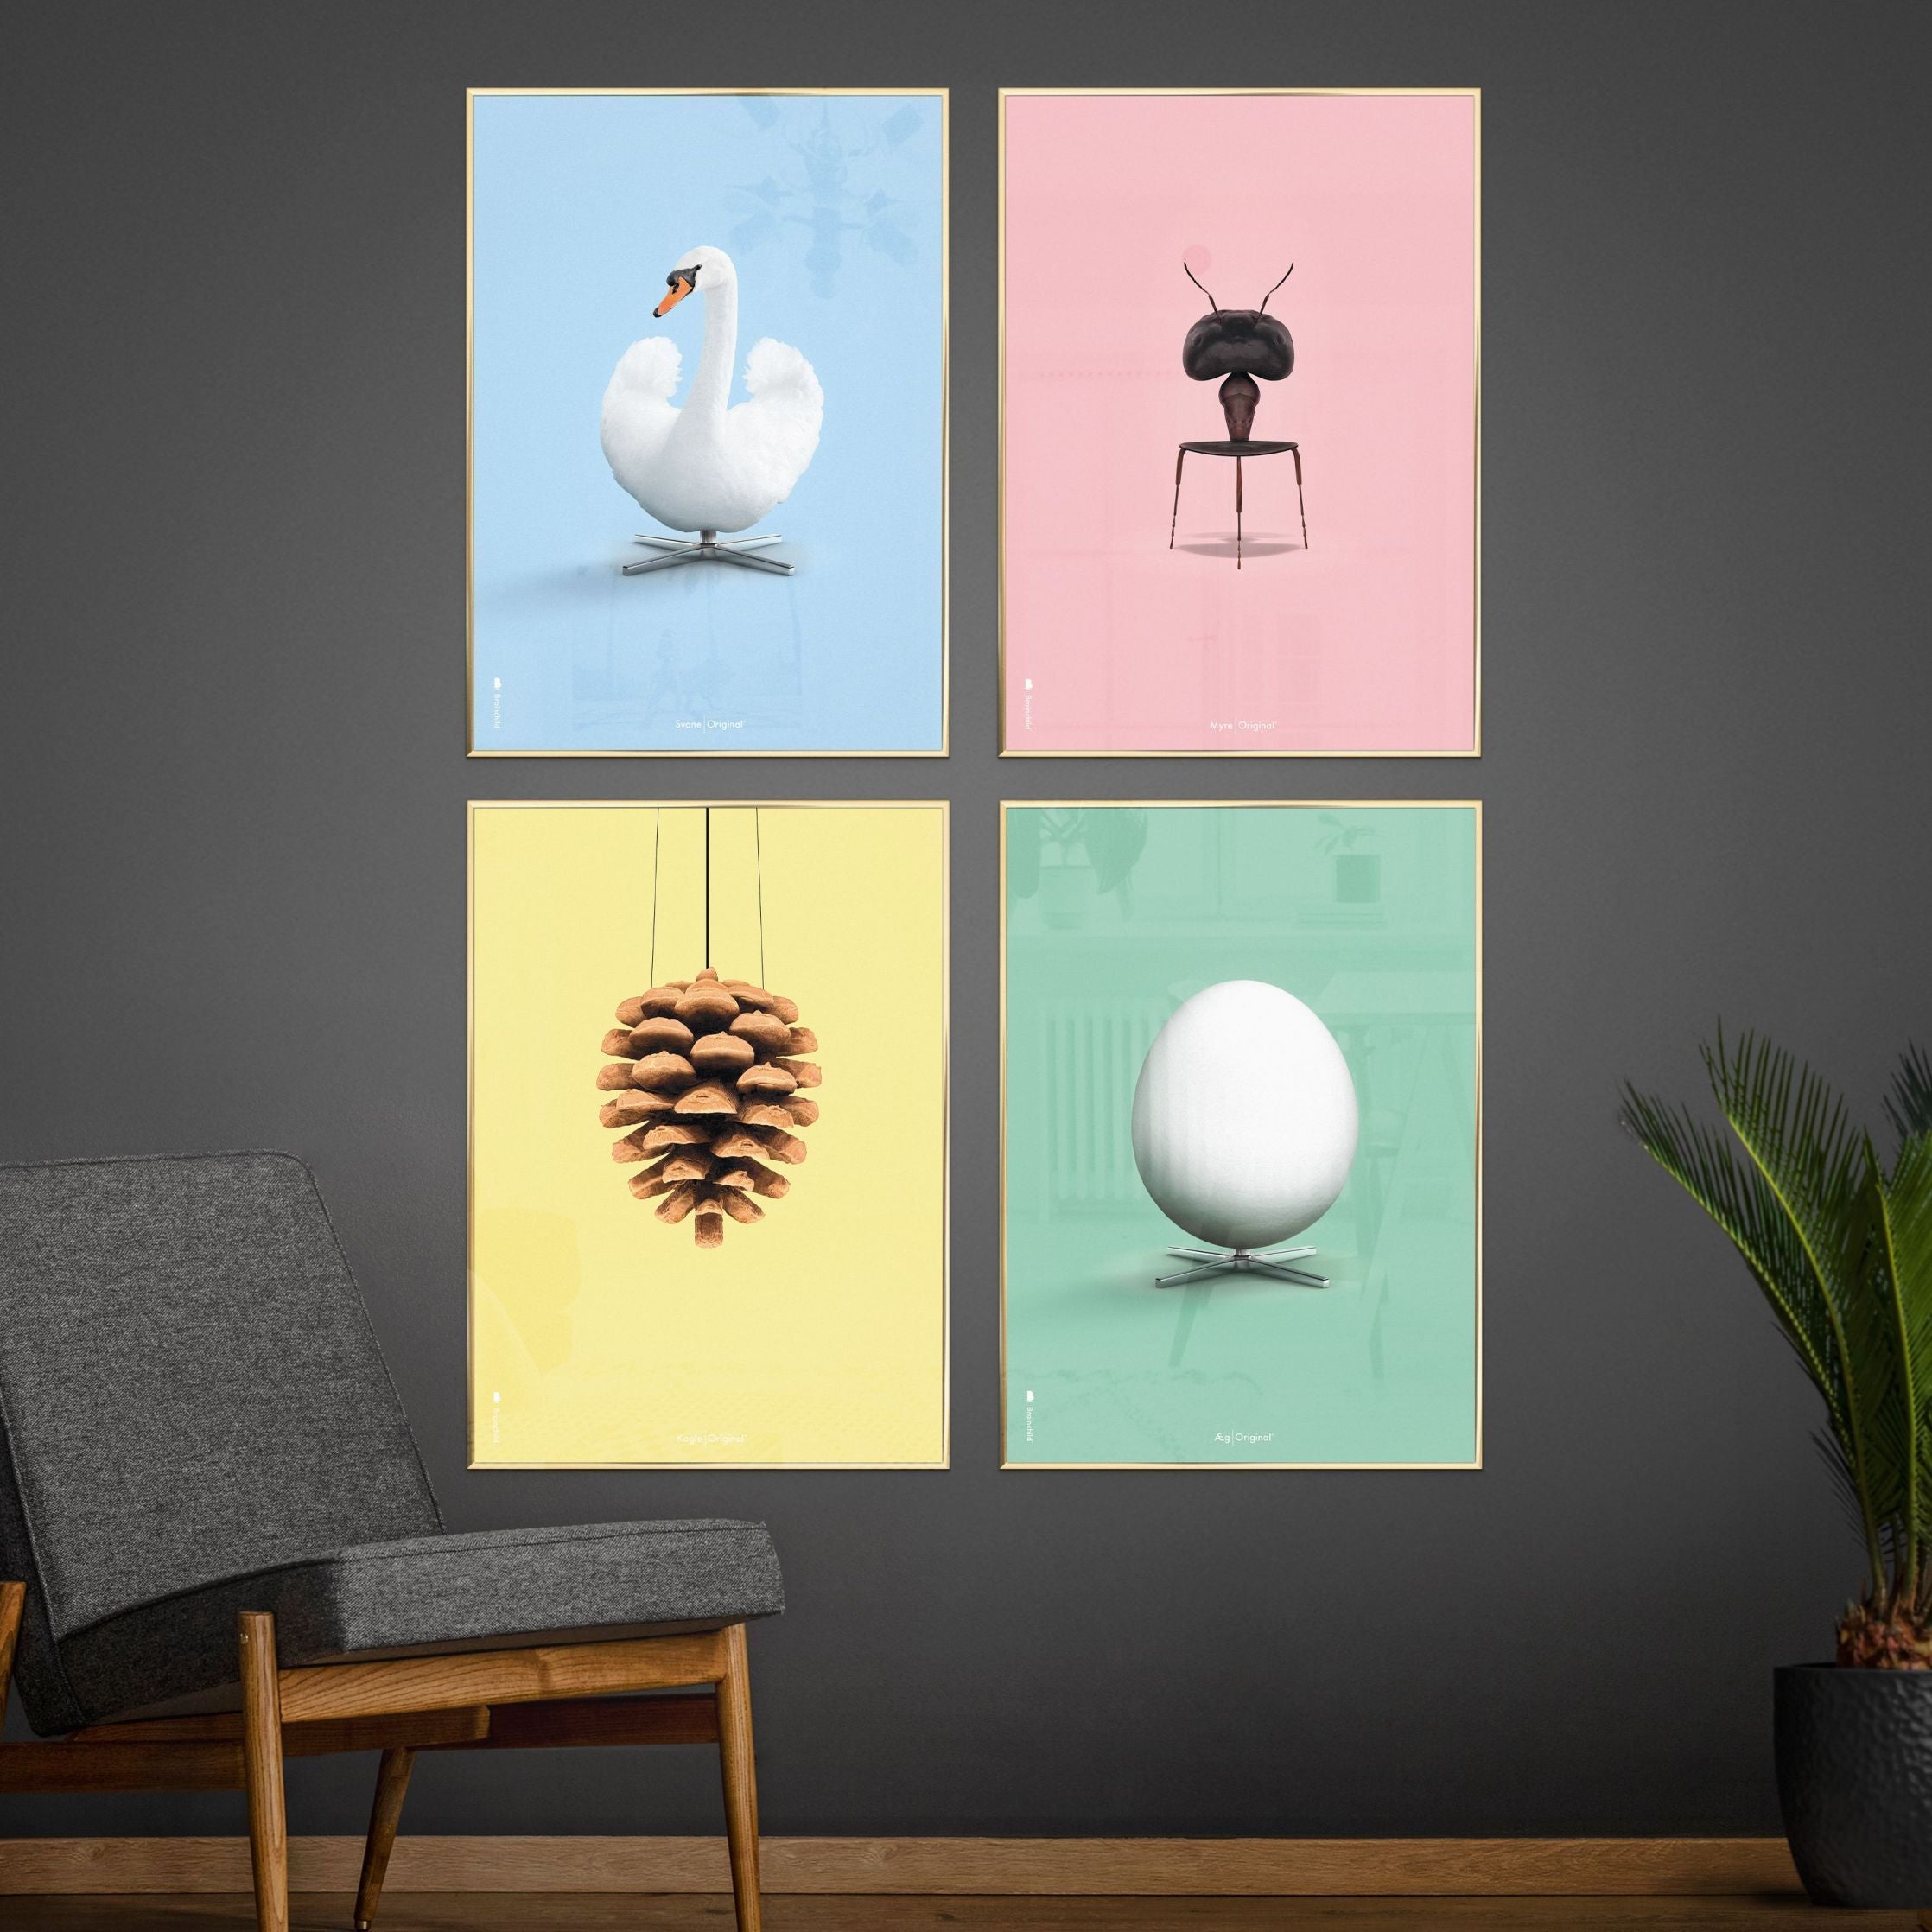 Poster classico di uova da gioco, cornice in ottone 30x40 cm, sfondo verde menta